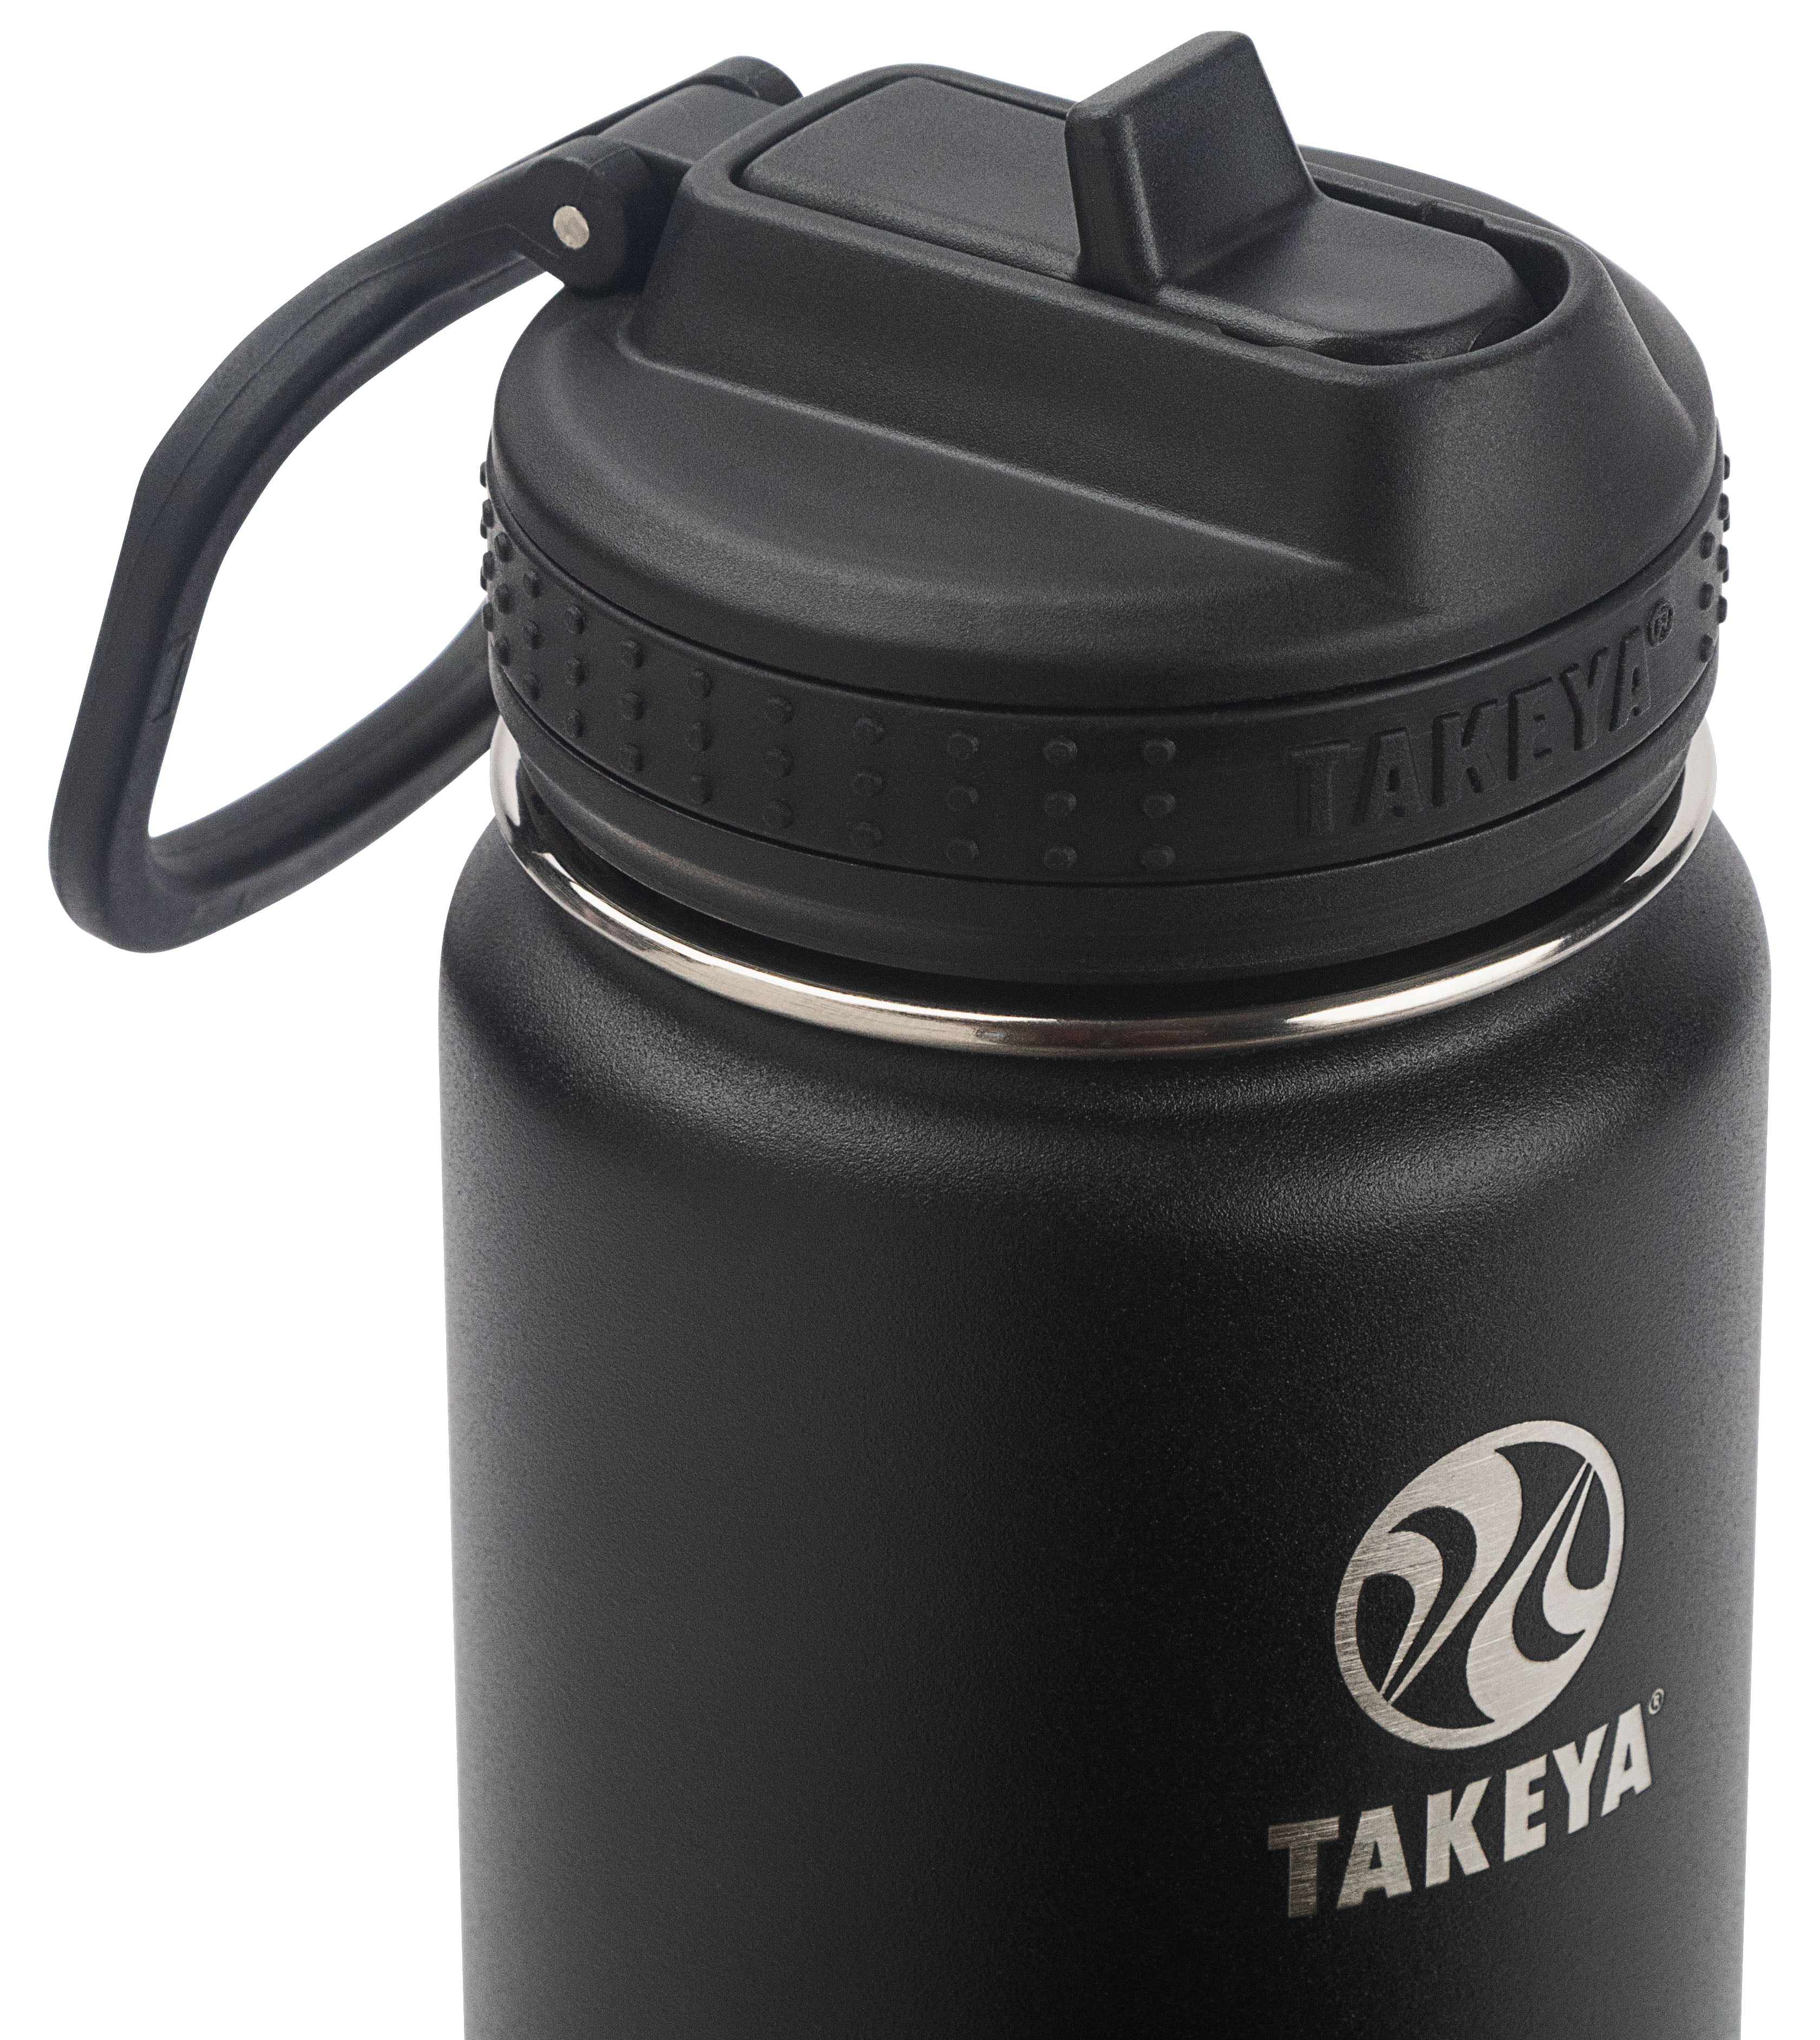 Takeya USA Actives Tumbler Straw Lid in Black